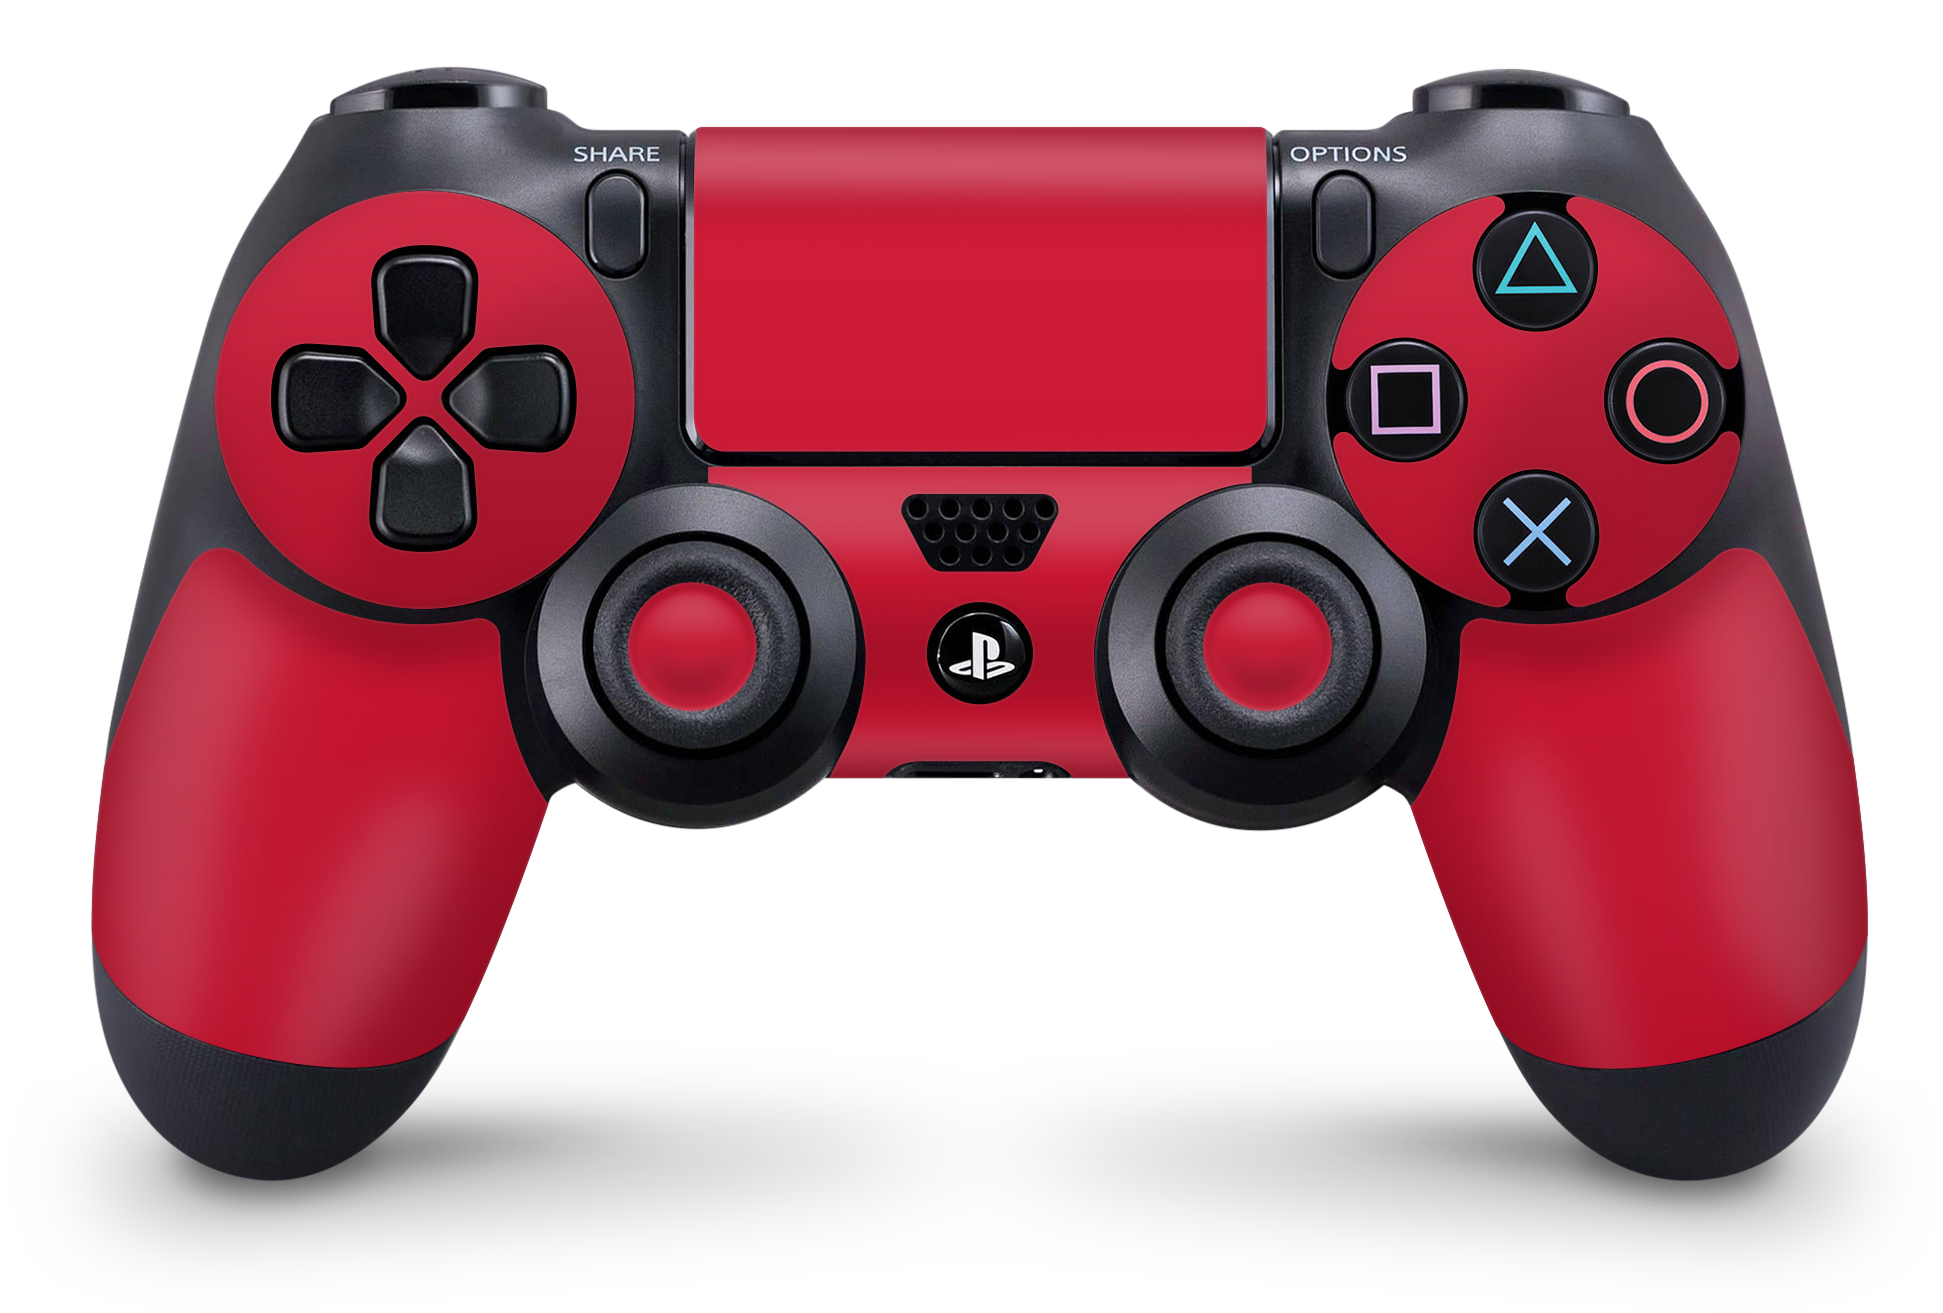 PS4 Playstation 4 Controller Skins - Vinyl Skin Aufkleber für Gaming Controller Solid State red Aufkleber Skins4u   